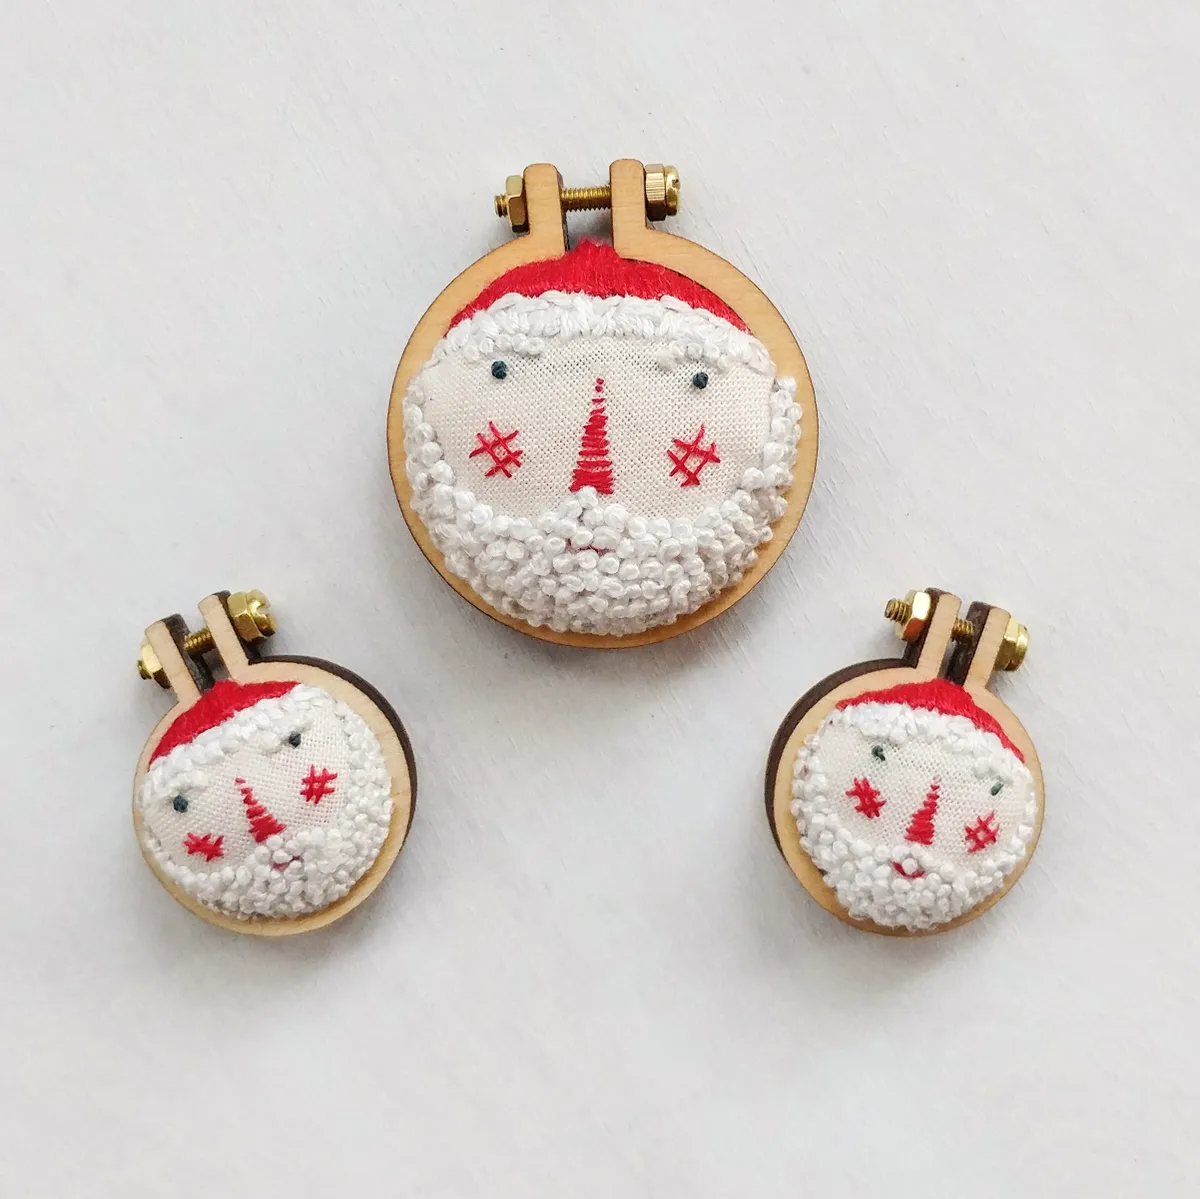 Mini Santa embroidery designs final three